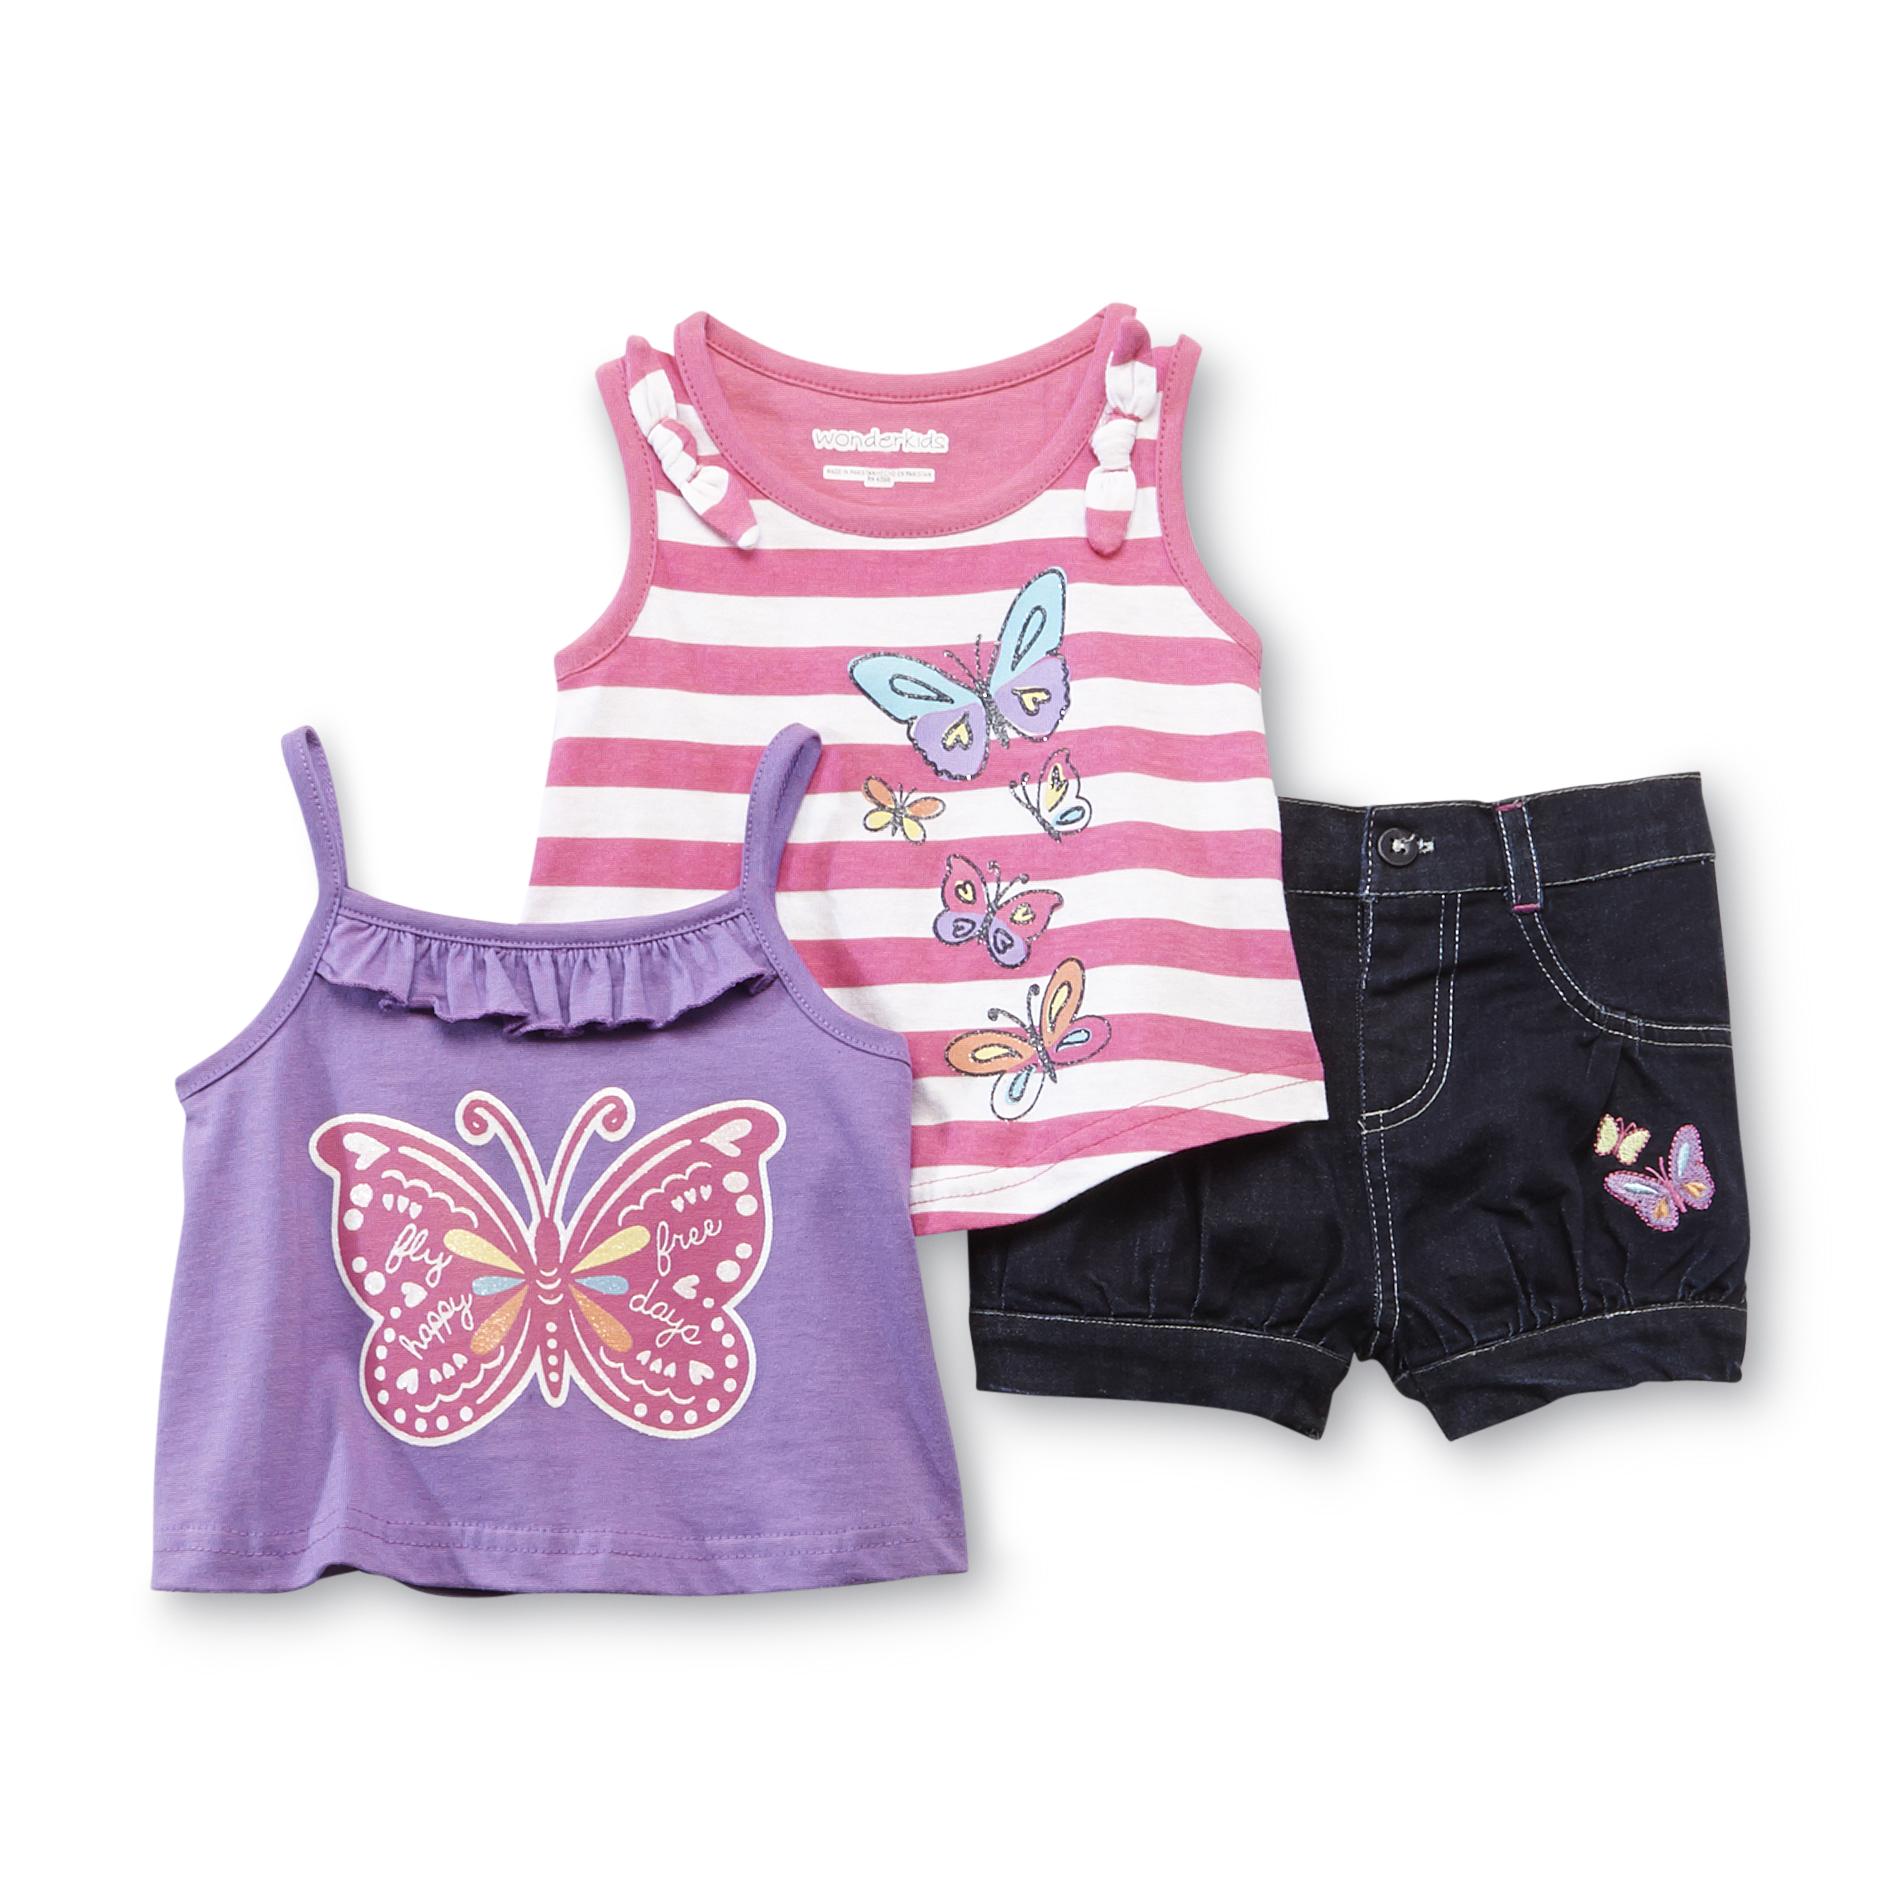 WonderKids Infant & Toddler Girl's 2 Tank Tops & Shorts - Butterflies